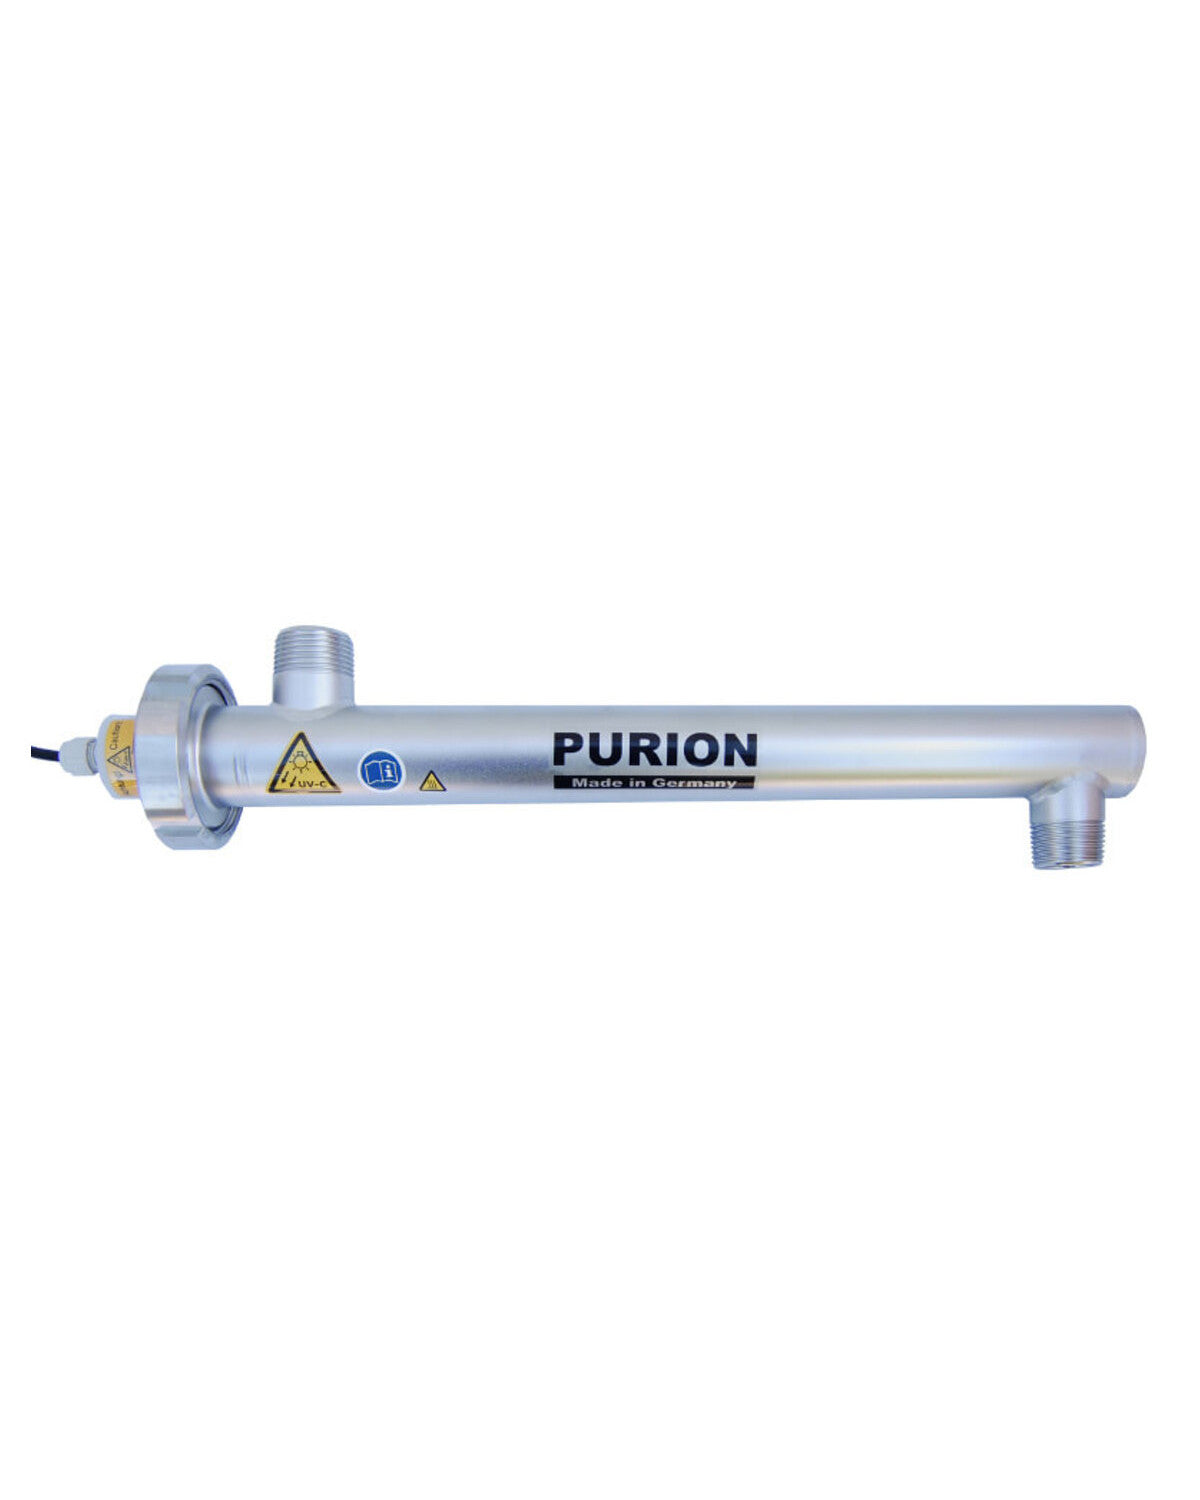 Der PURION 1000 110 - 240 V AC ESM, hergestellt von der PURION GmbH, nutzt UV-C-Licht-Technologie zur Desinfektion von Wasser.